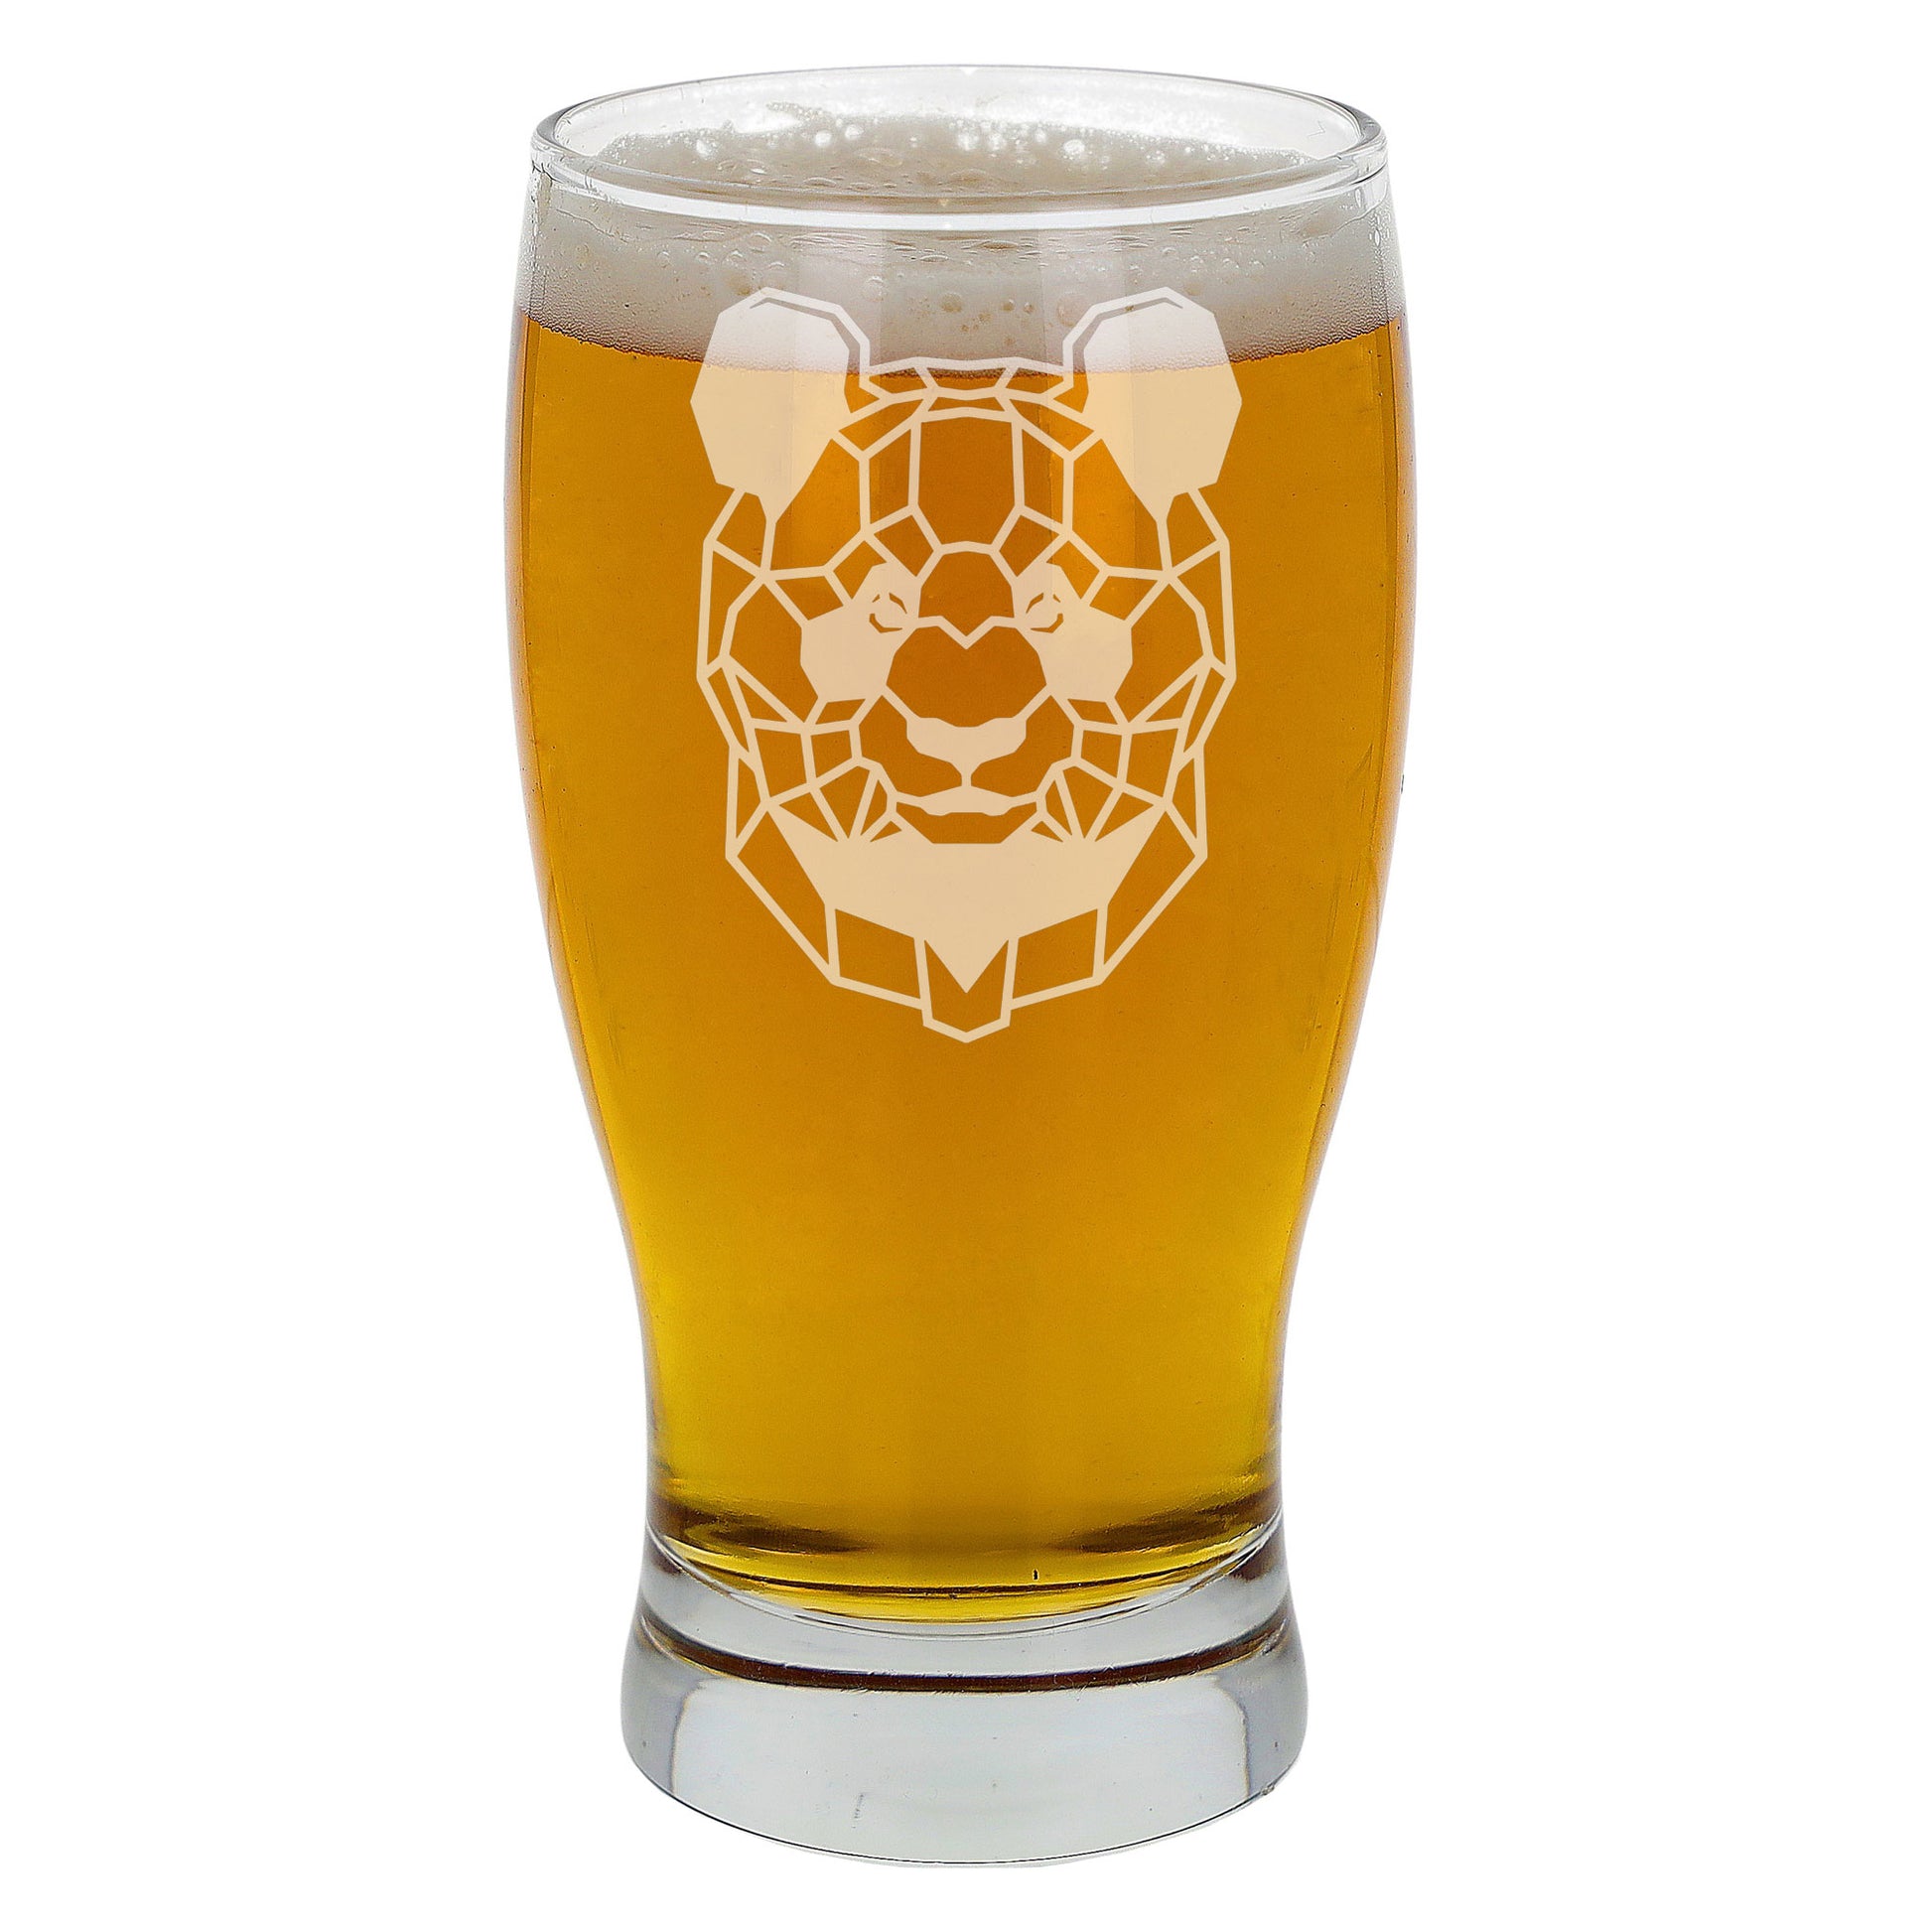 Panda Engraved Beer Pint Glass  - Always Looking Good -   